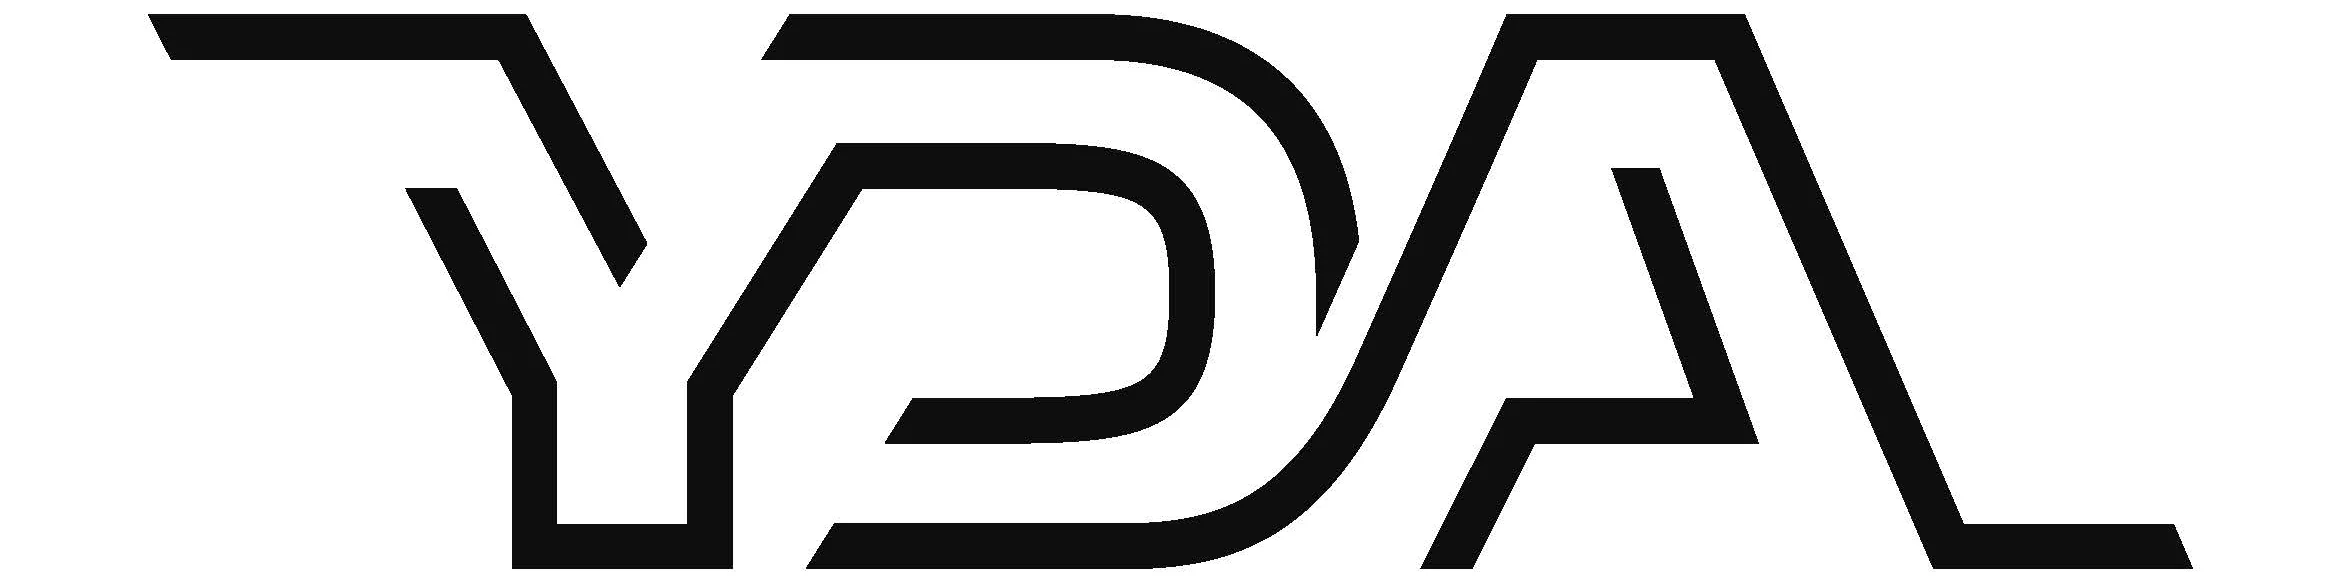 yda-logo-2019.png